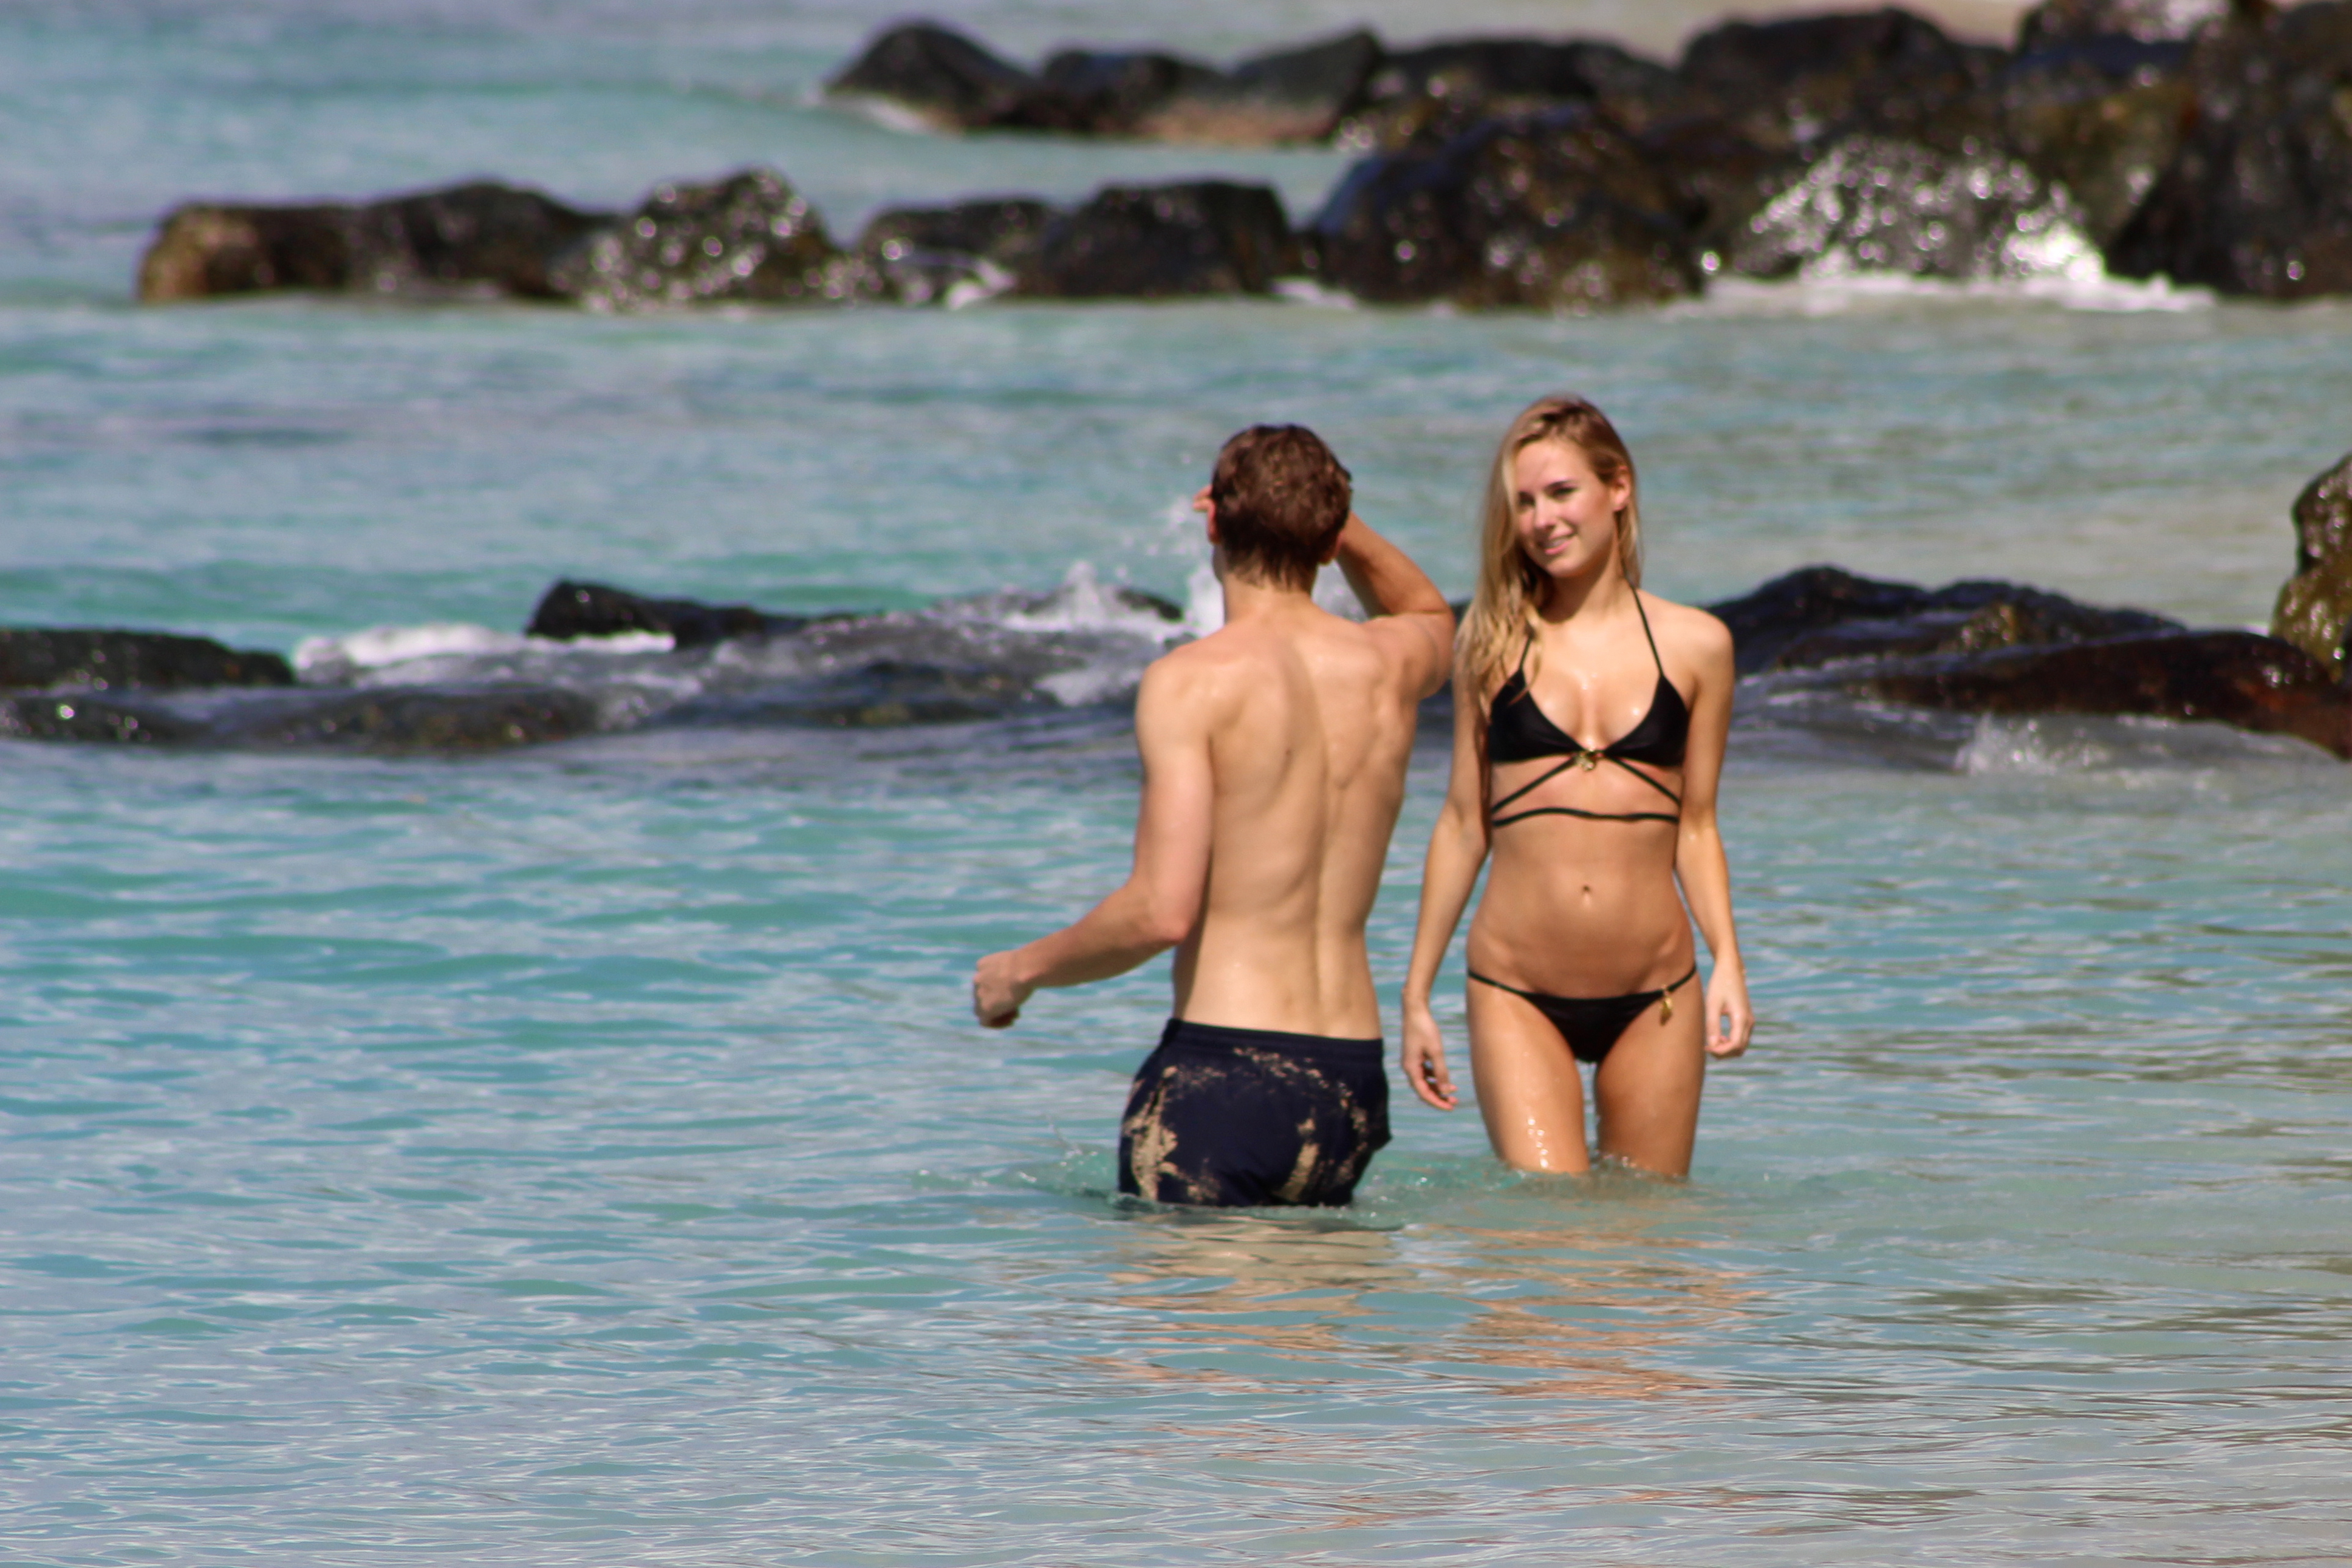 Kimberley_Garner_wearing_sexy_bikini_on_the_beach_in_Barbados_39x_HQ_33.jpg